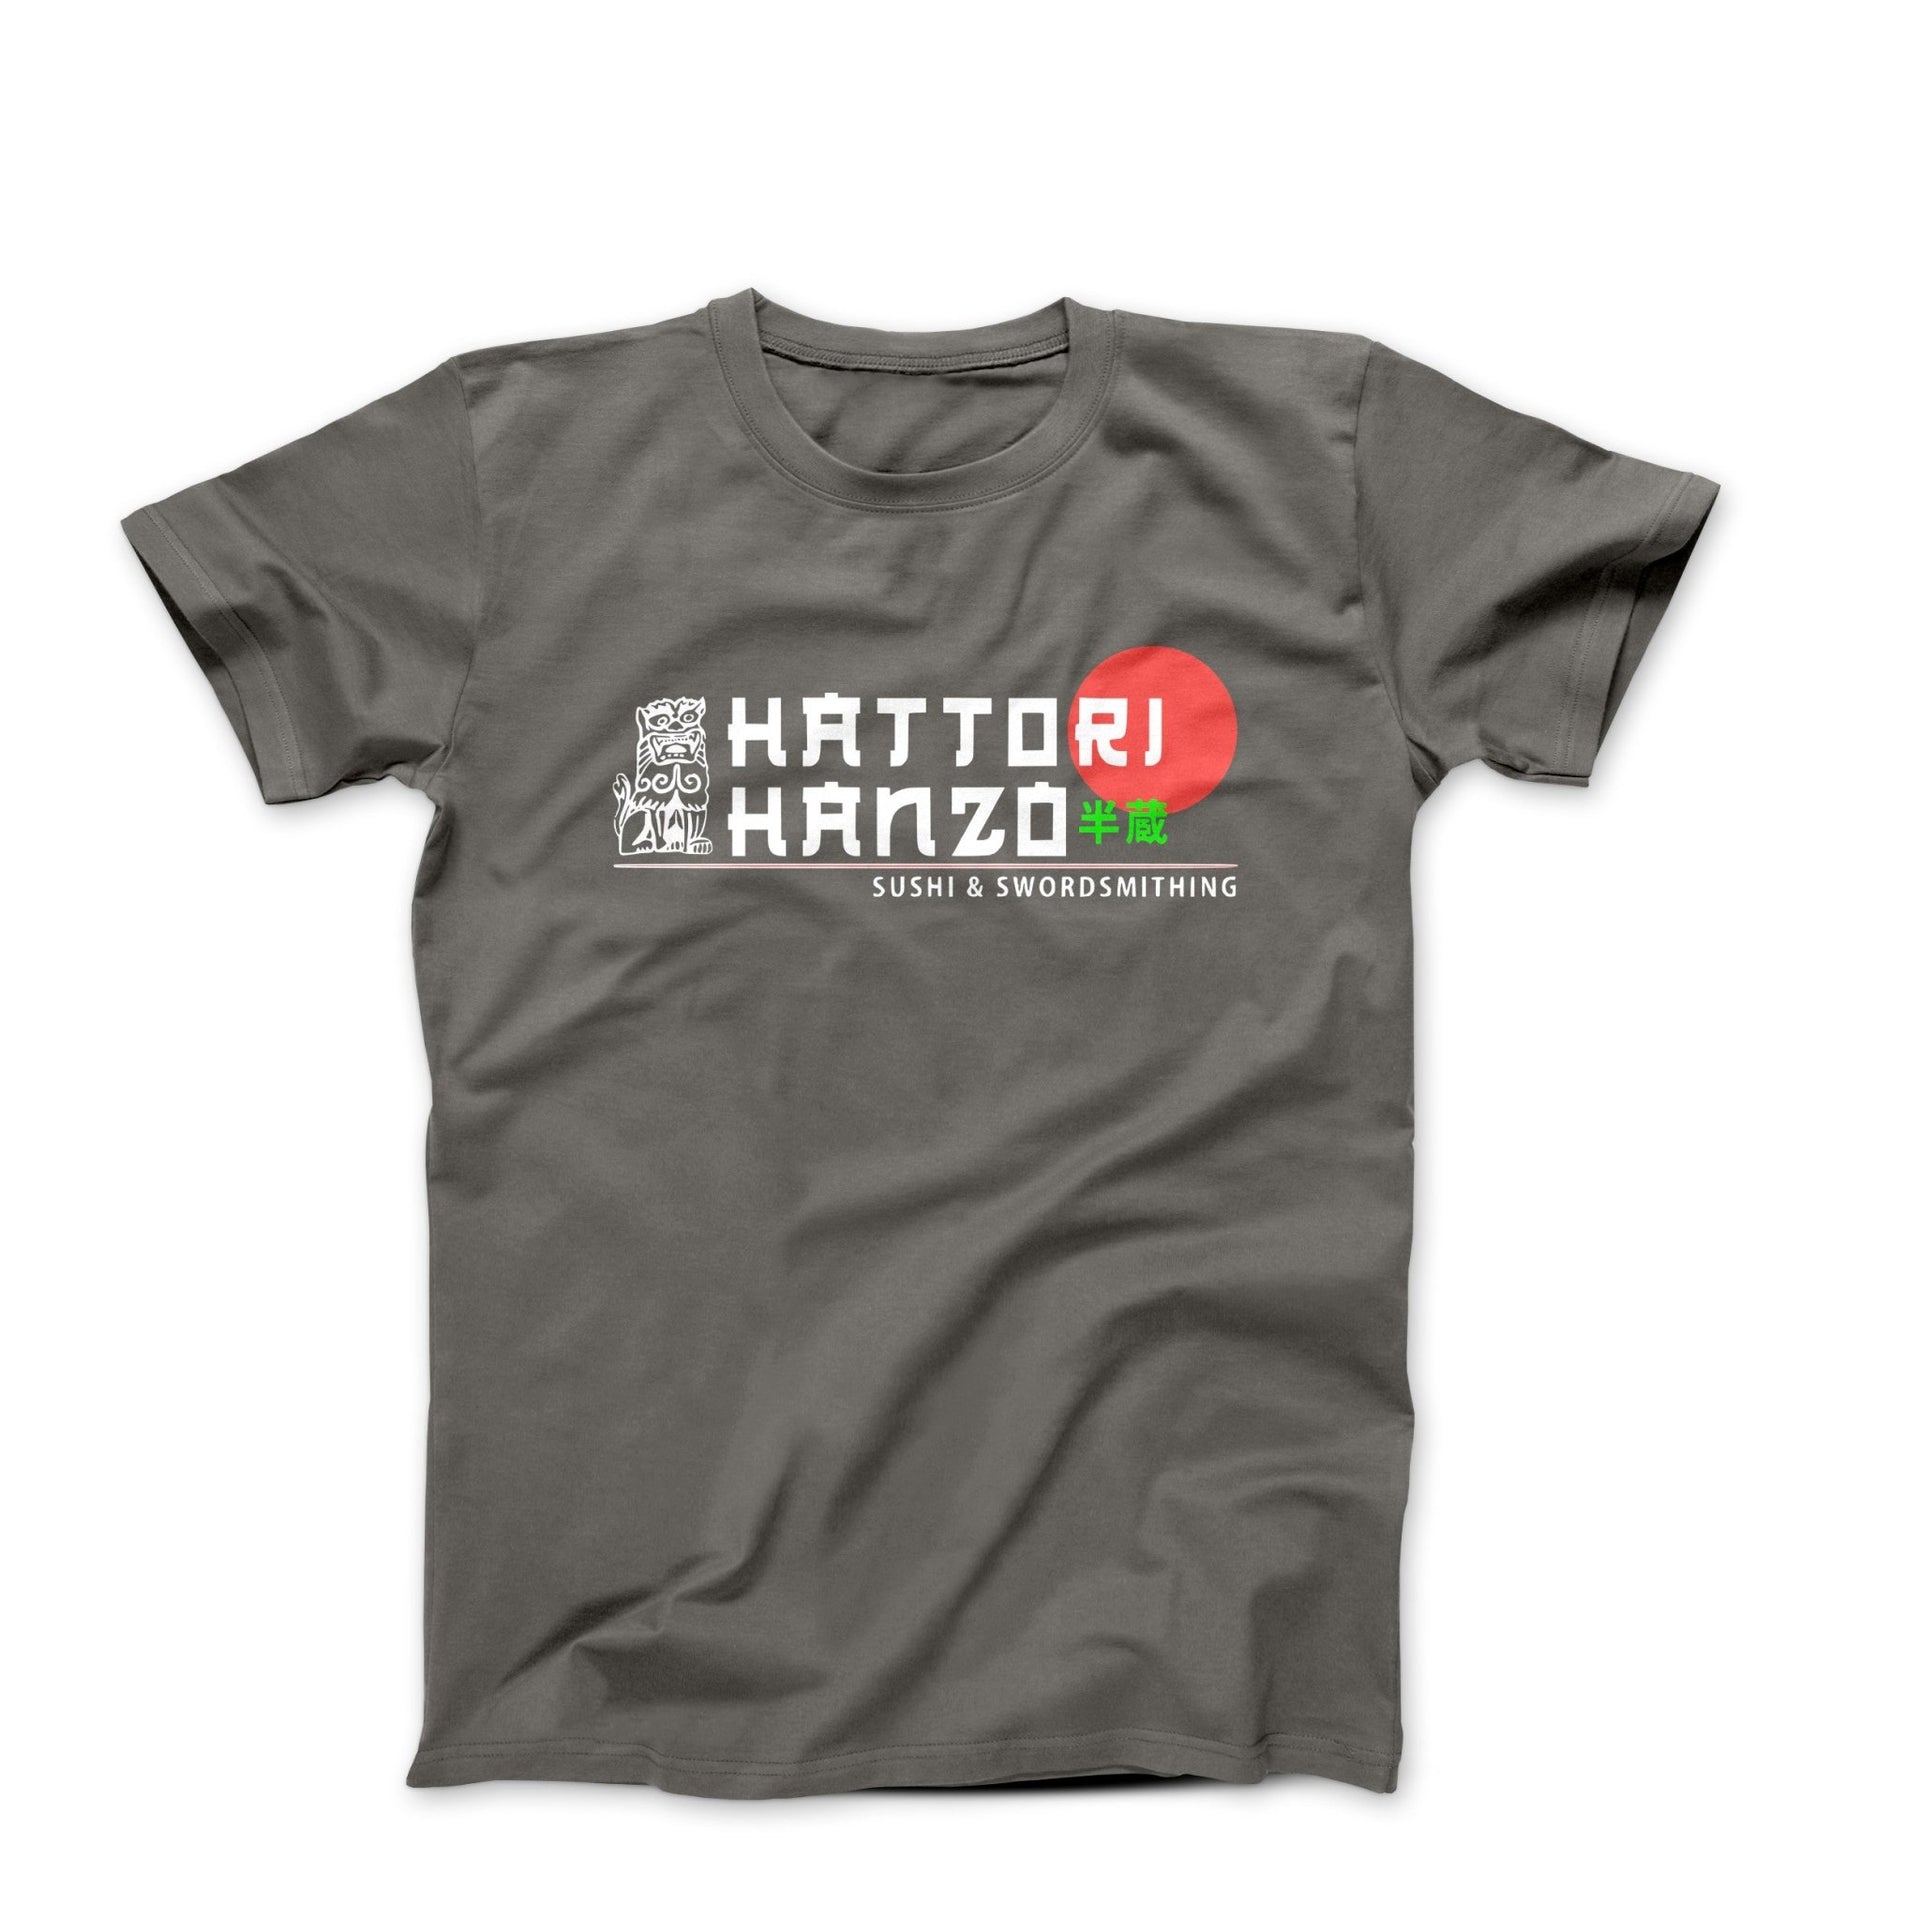 Hattori Hanzo, Sushi and Swordsmithing T-Shirt - Clothing - Harvey Ltd